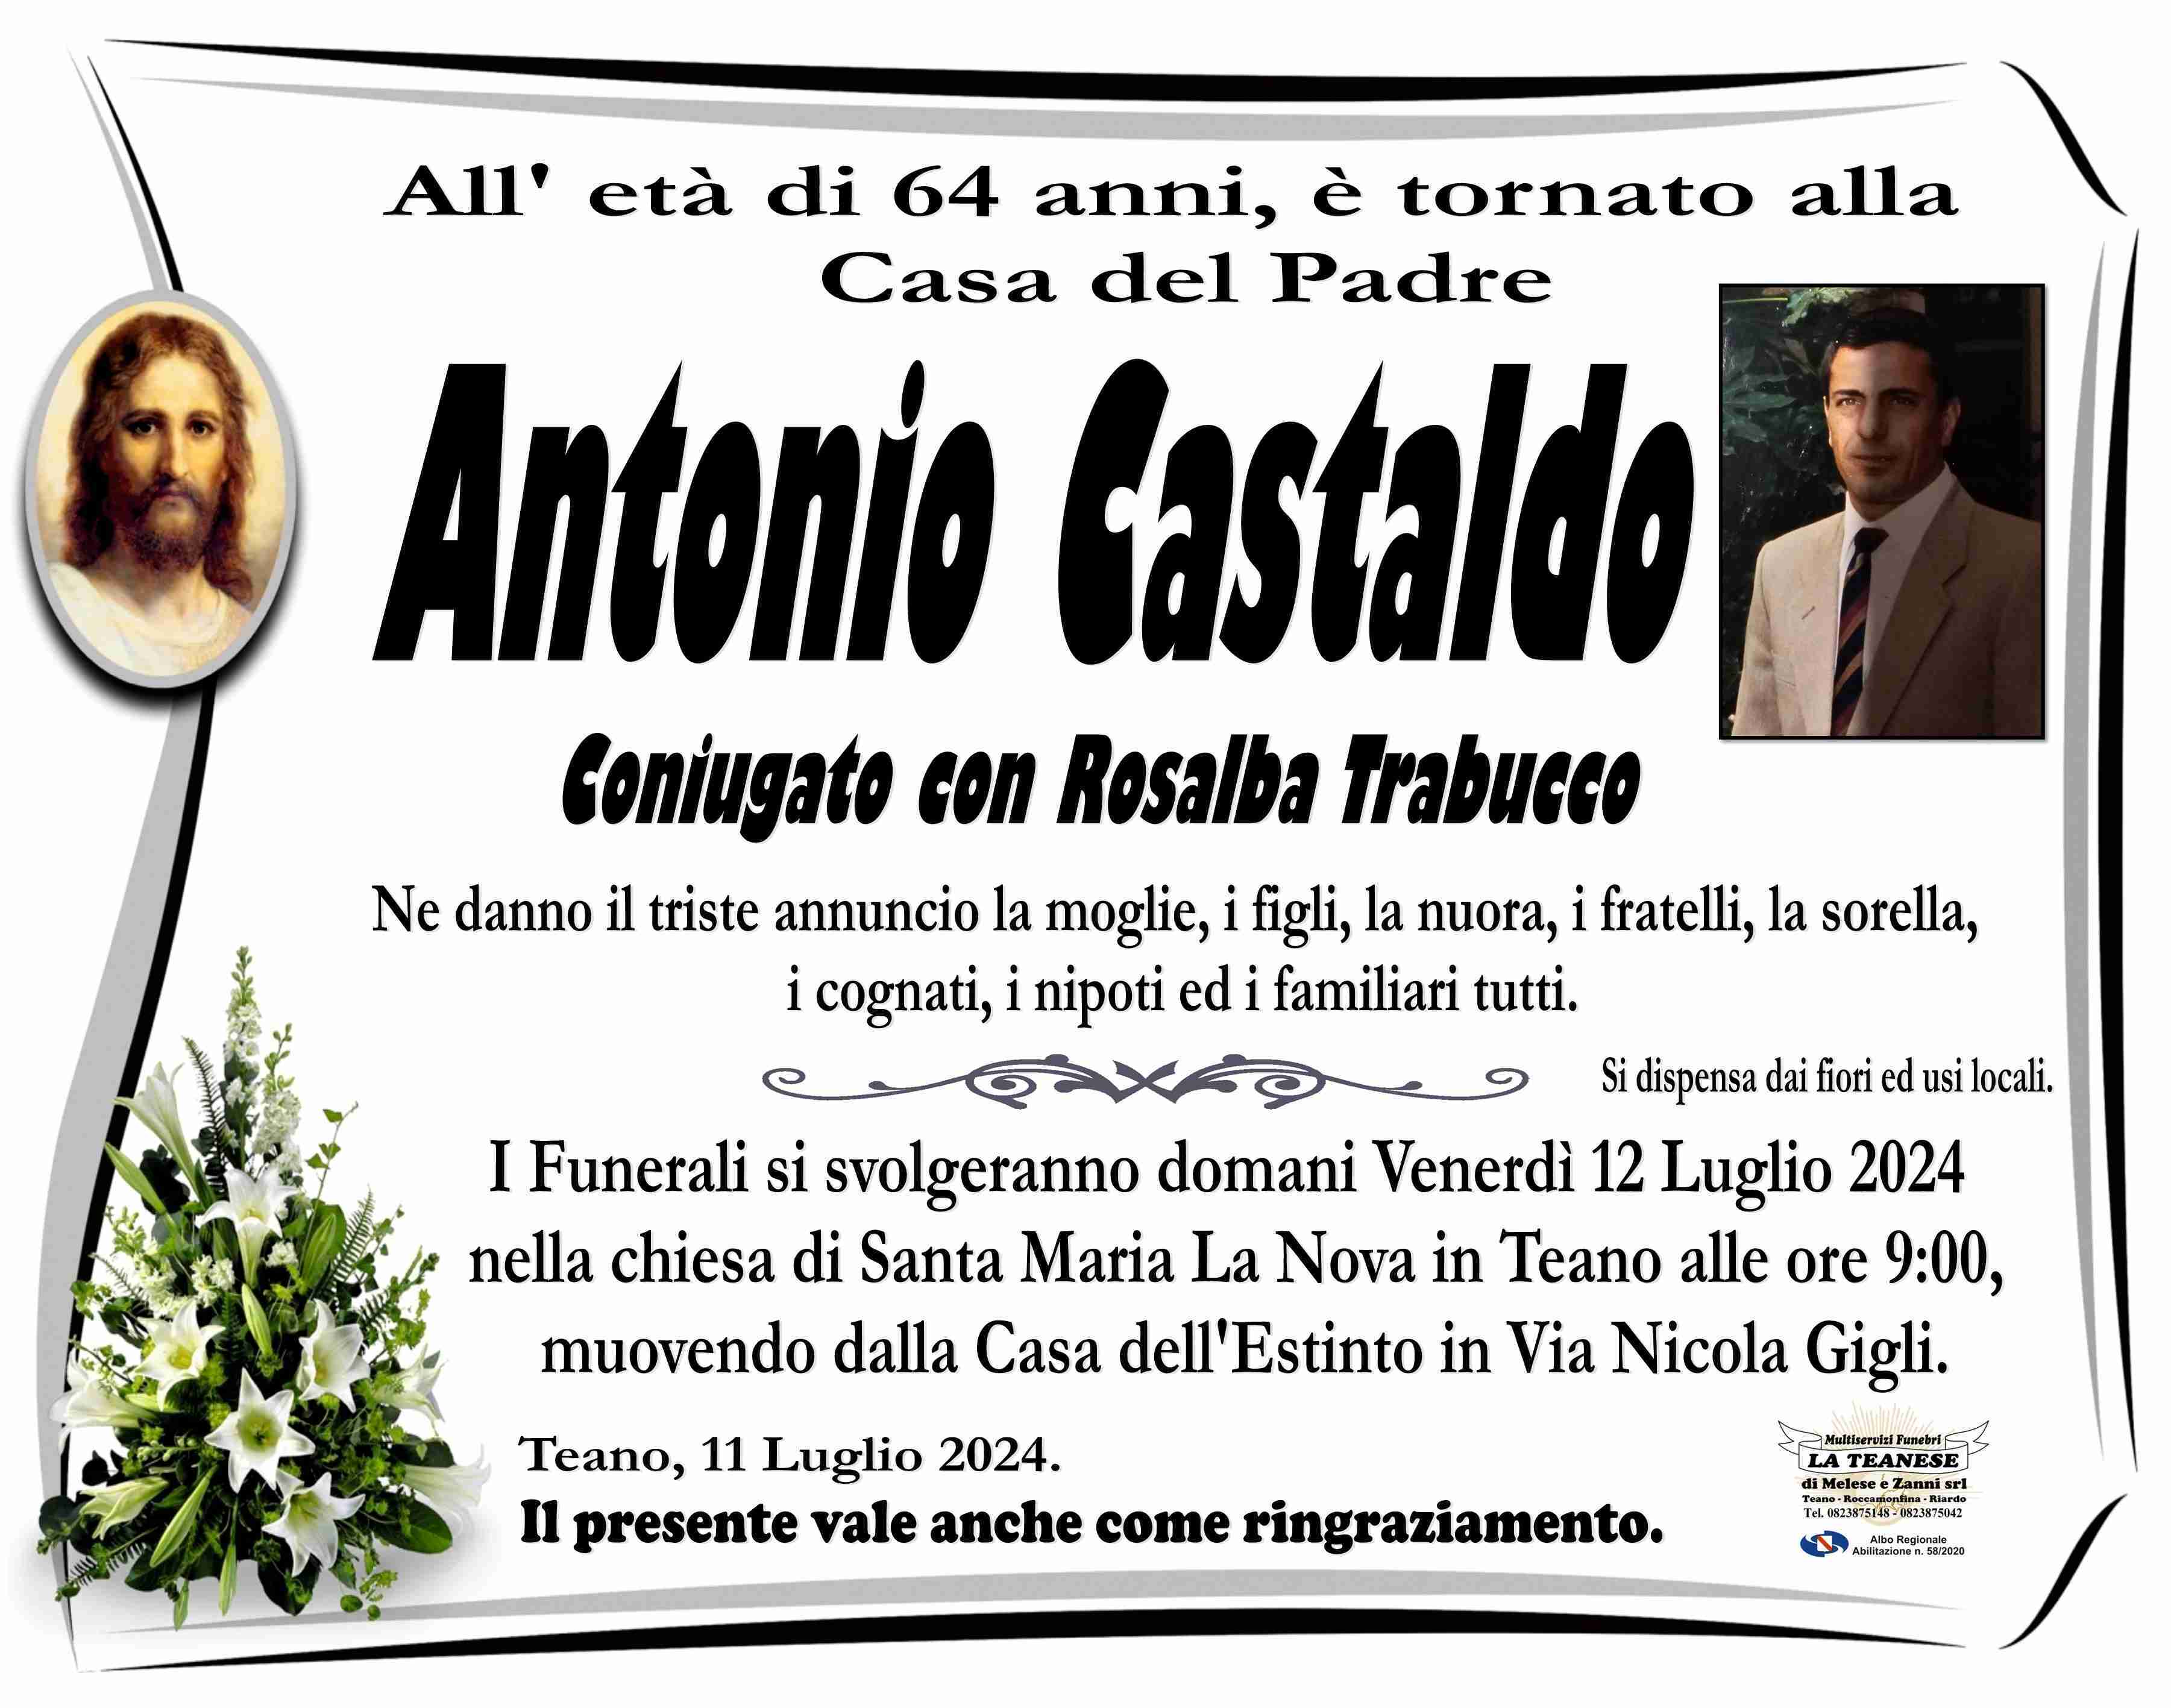 Antonio Castaldo